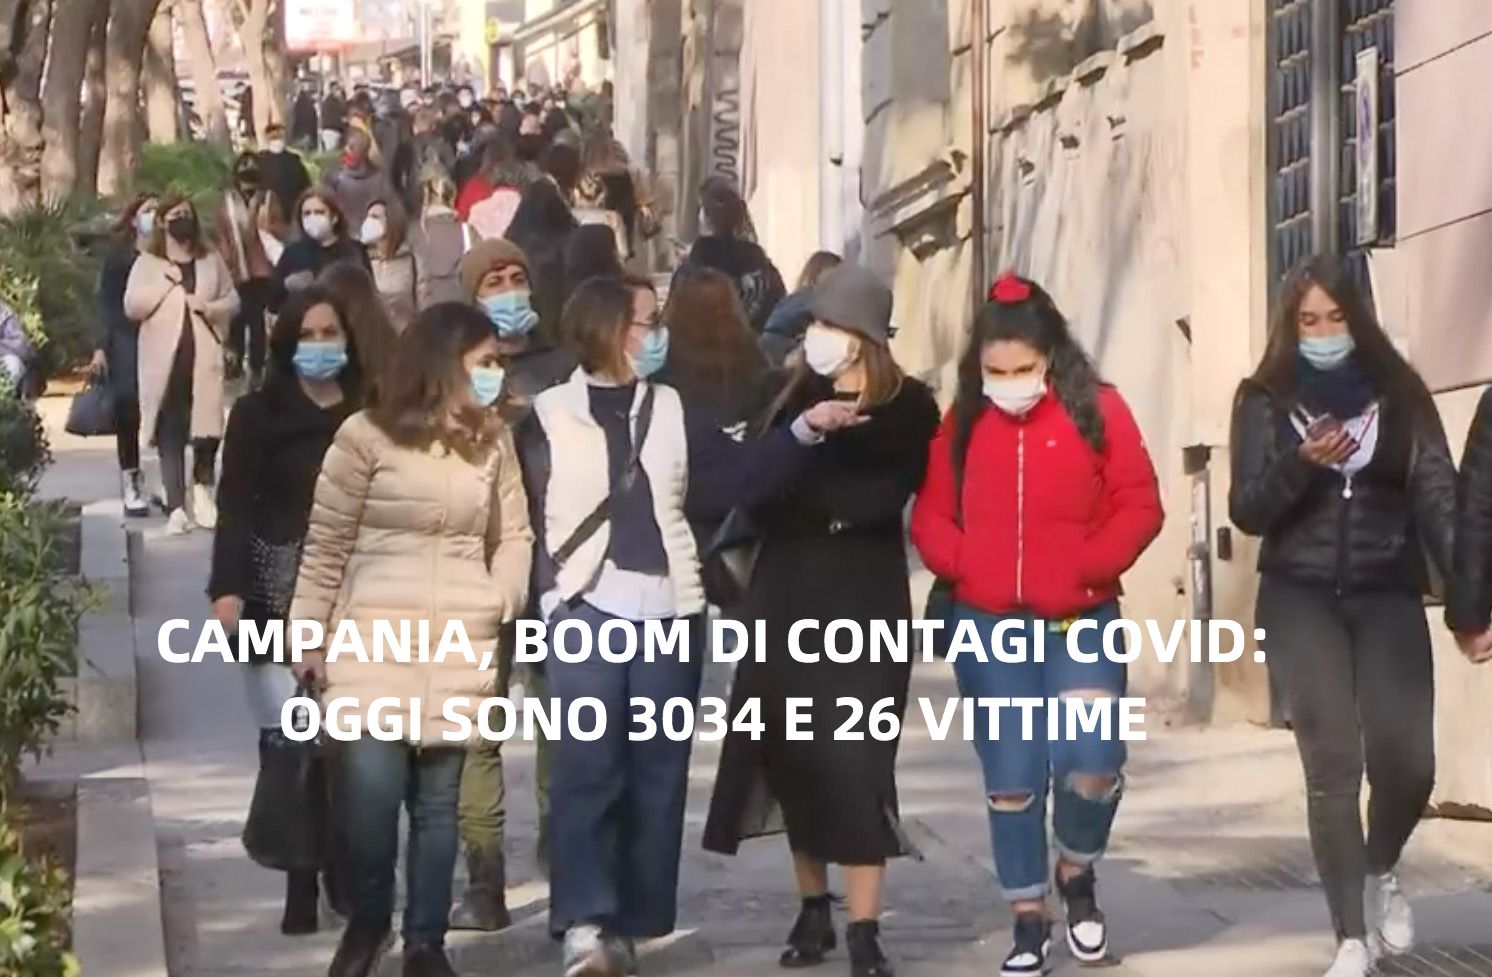 Covid, boom di casi in Campania: oggi sono 3034